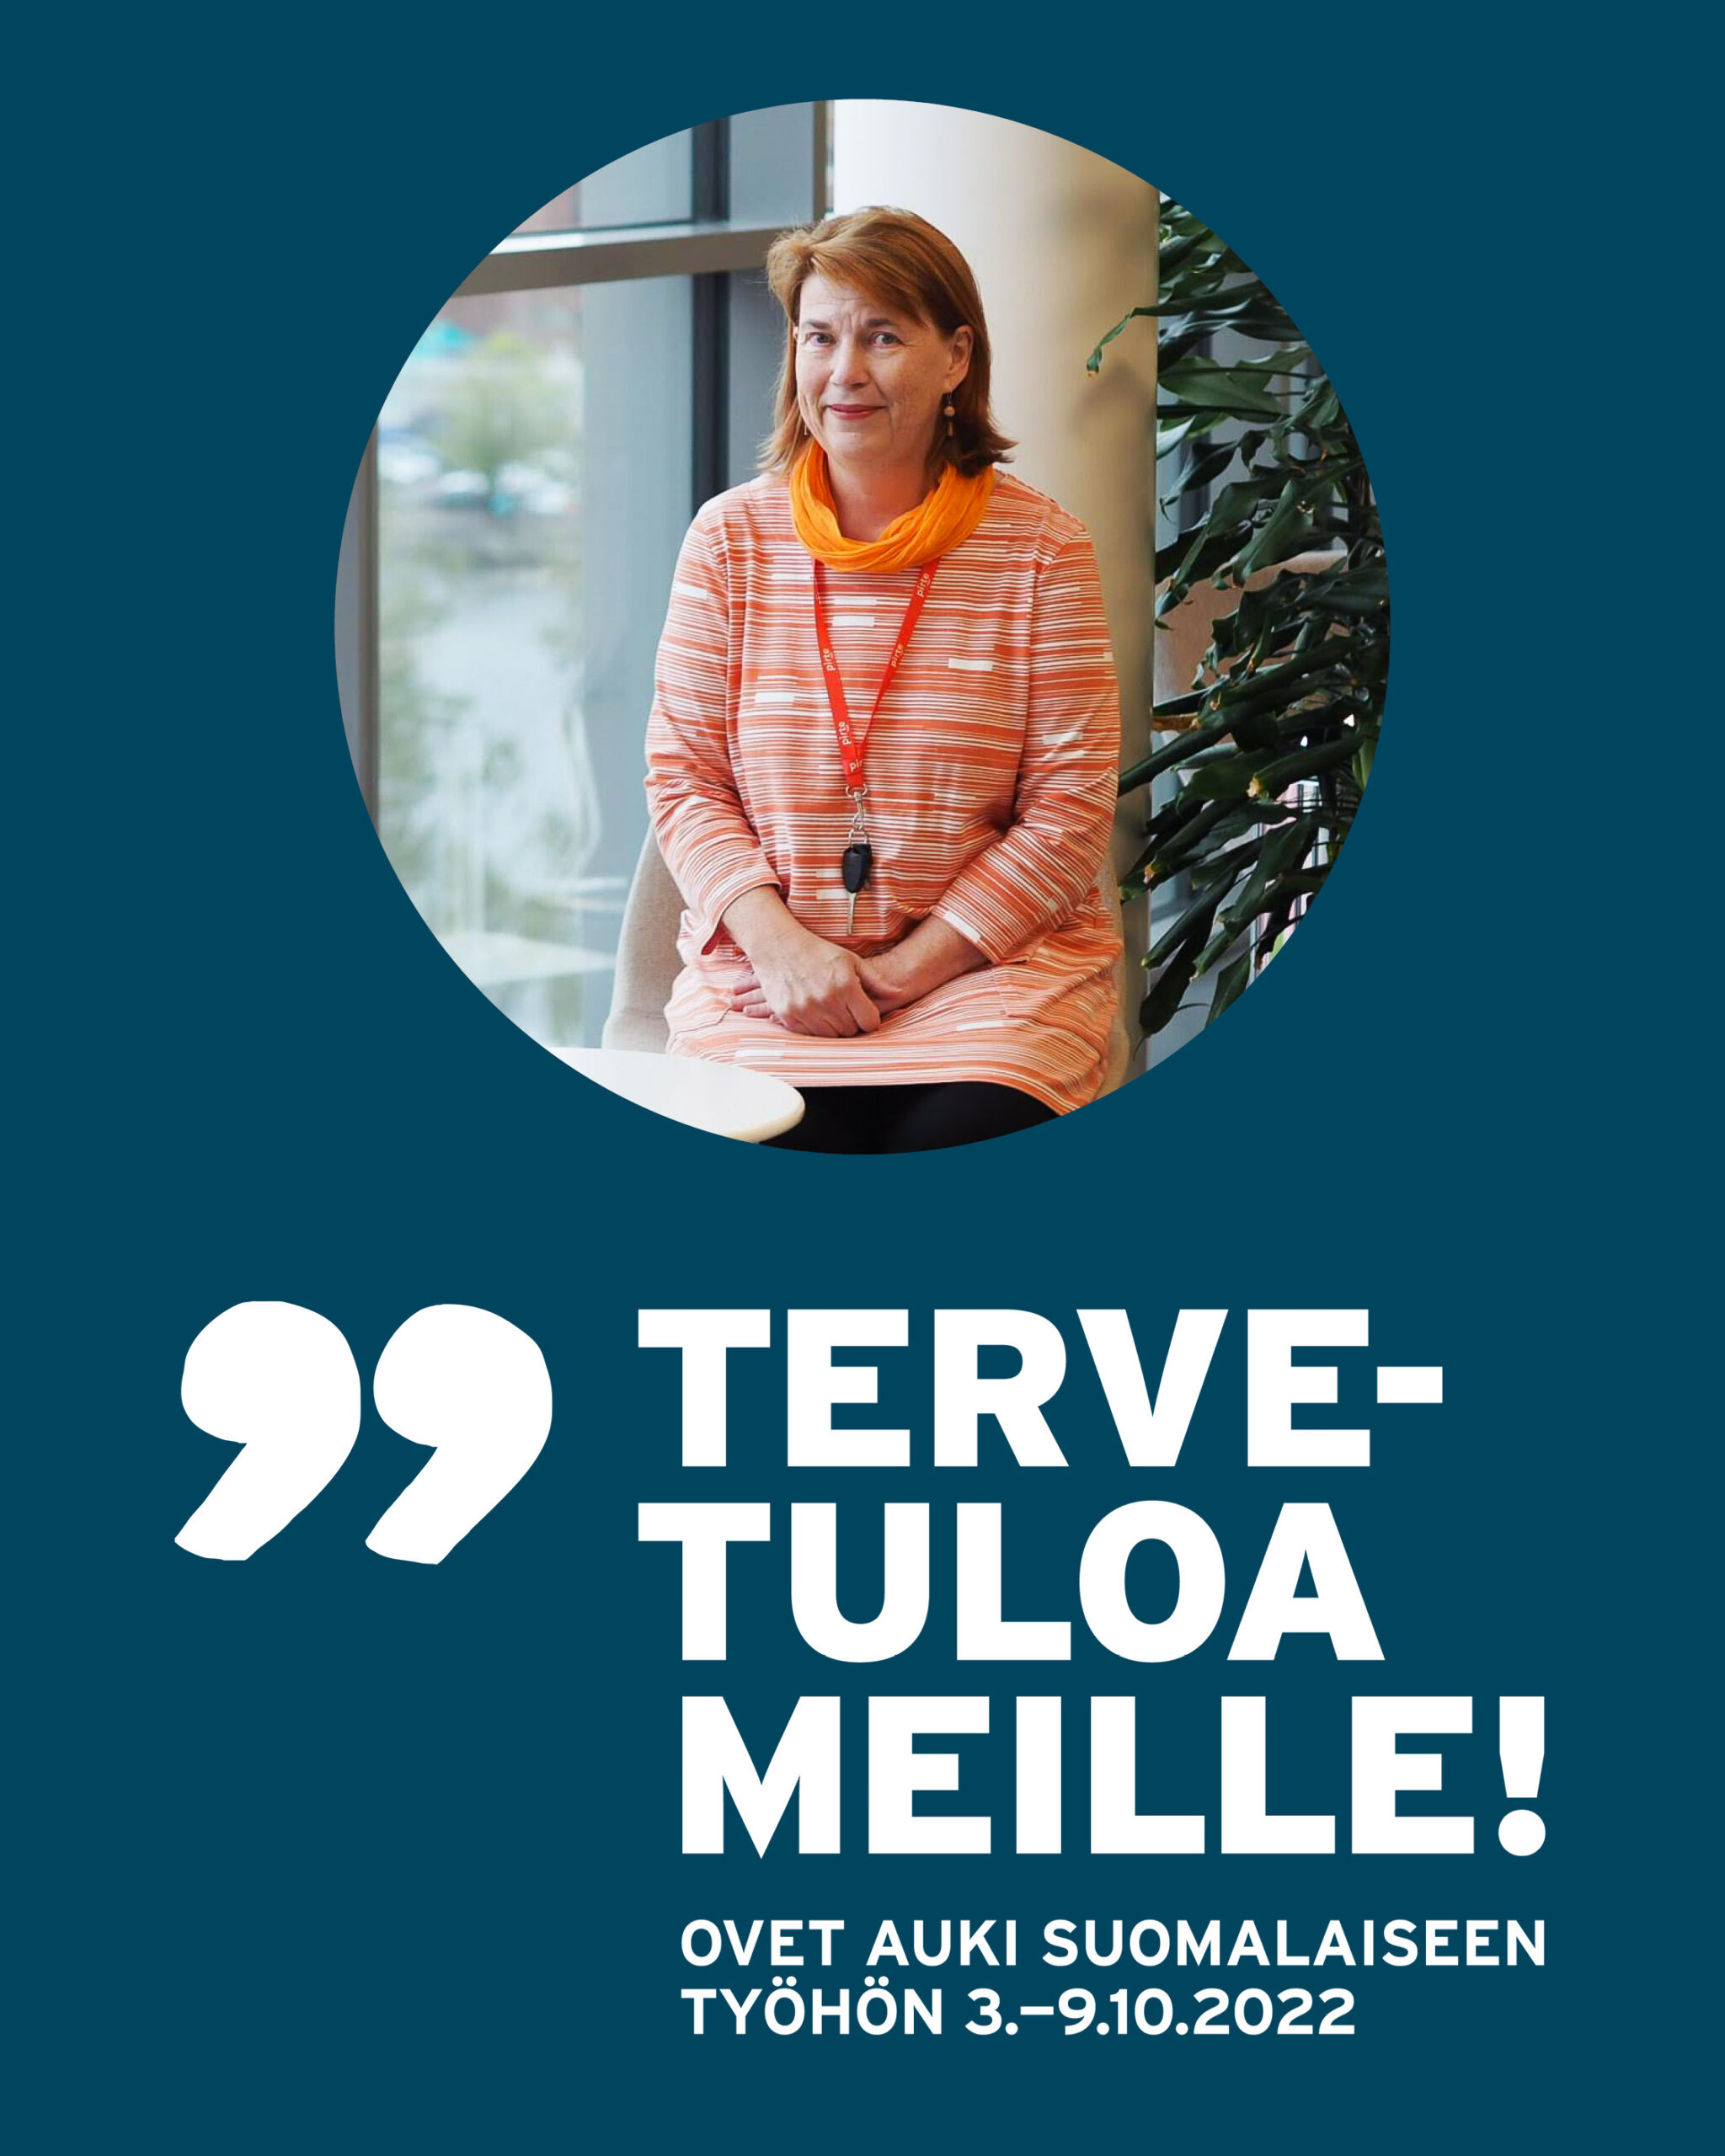 Kuvassa on Suomalaisen työn liiton Tervetuloa meille -viikon logo sekä hymyilevä kuva Pirten toimitusjohtaja Tiina Surakasta.